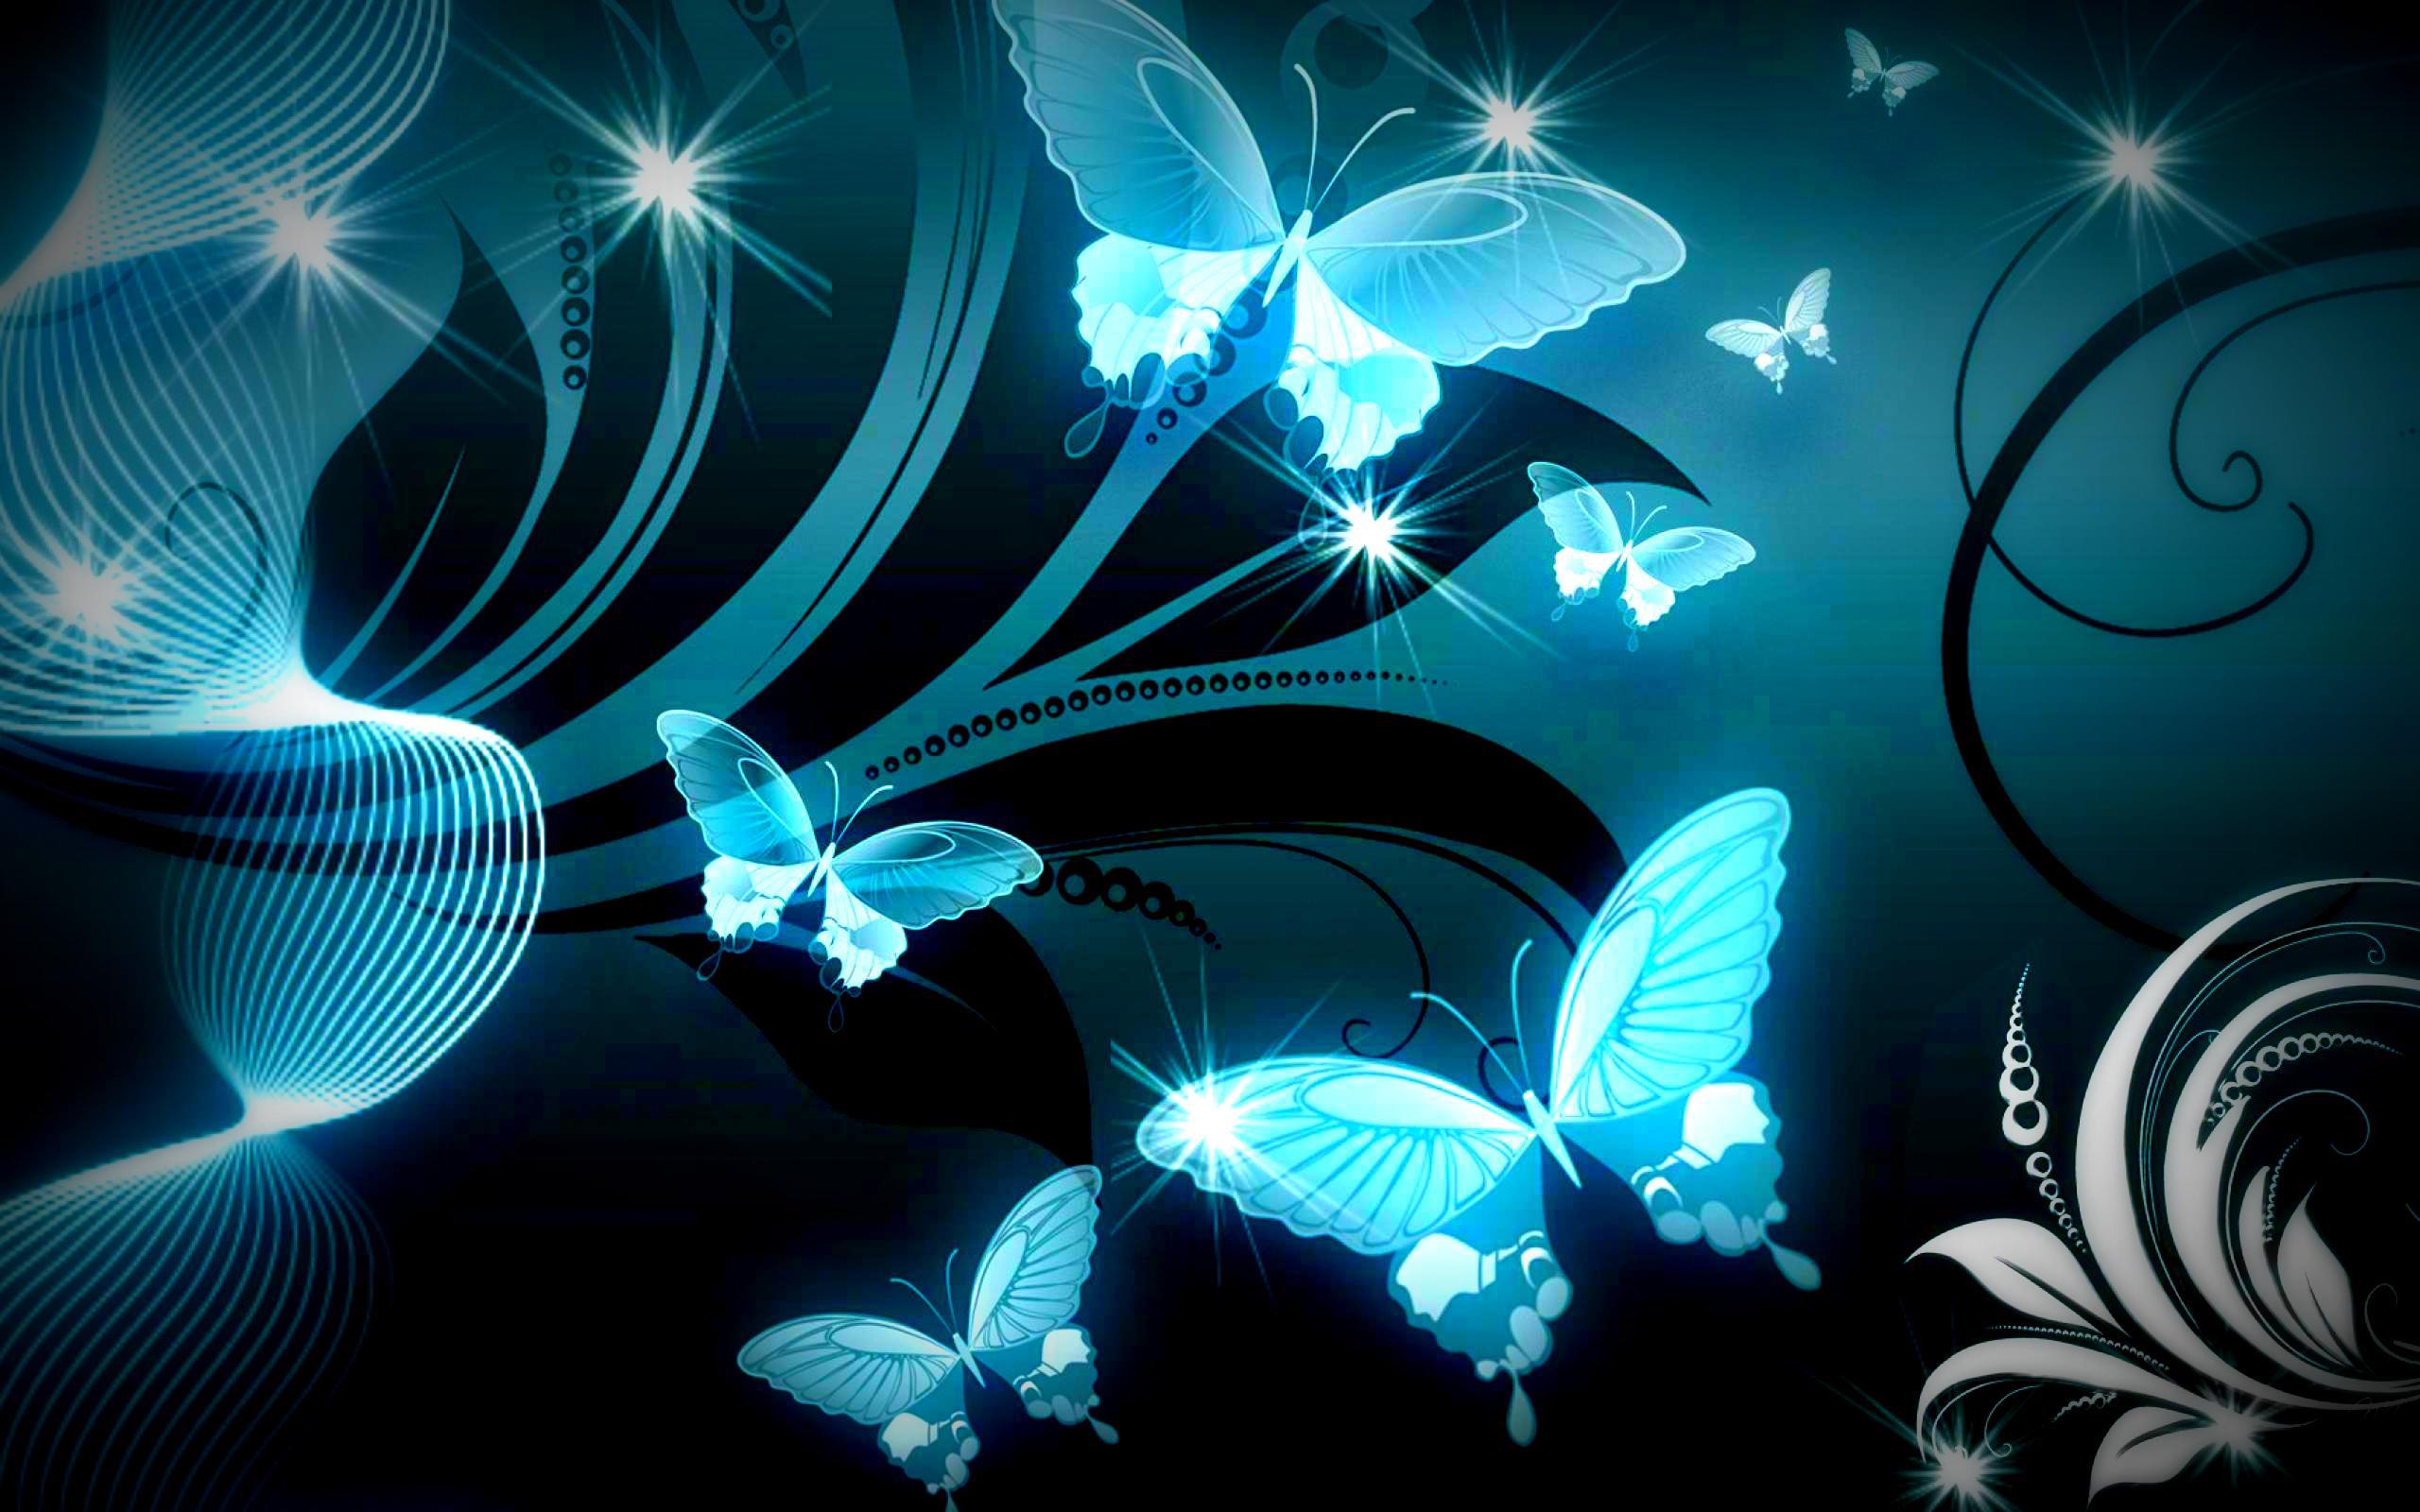 Beautiful Butterflies Wallpaper Wallpapers